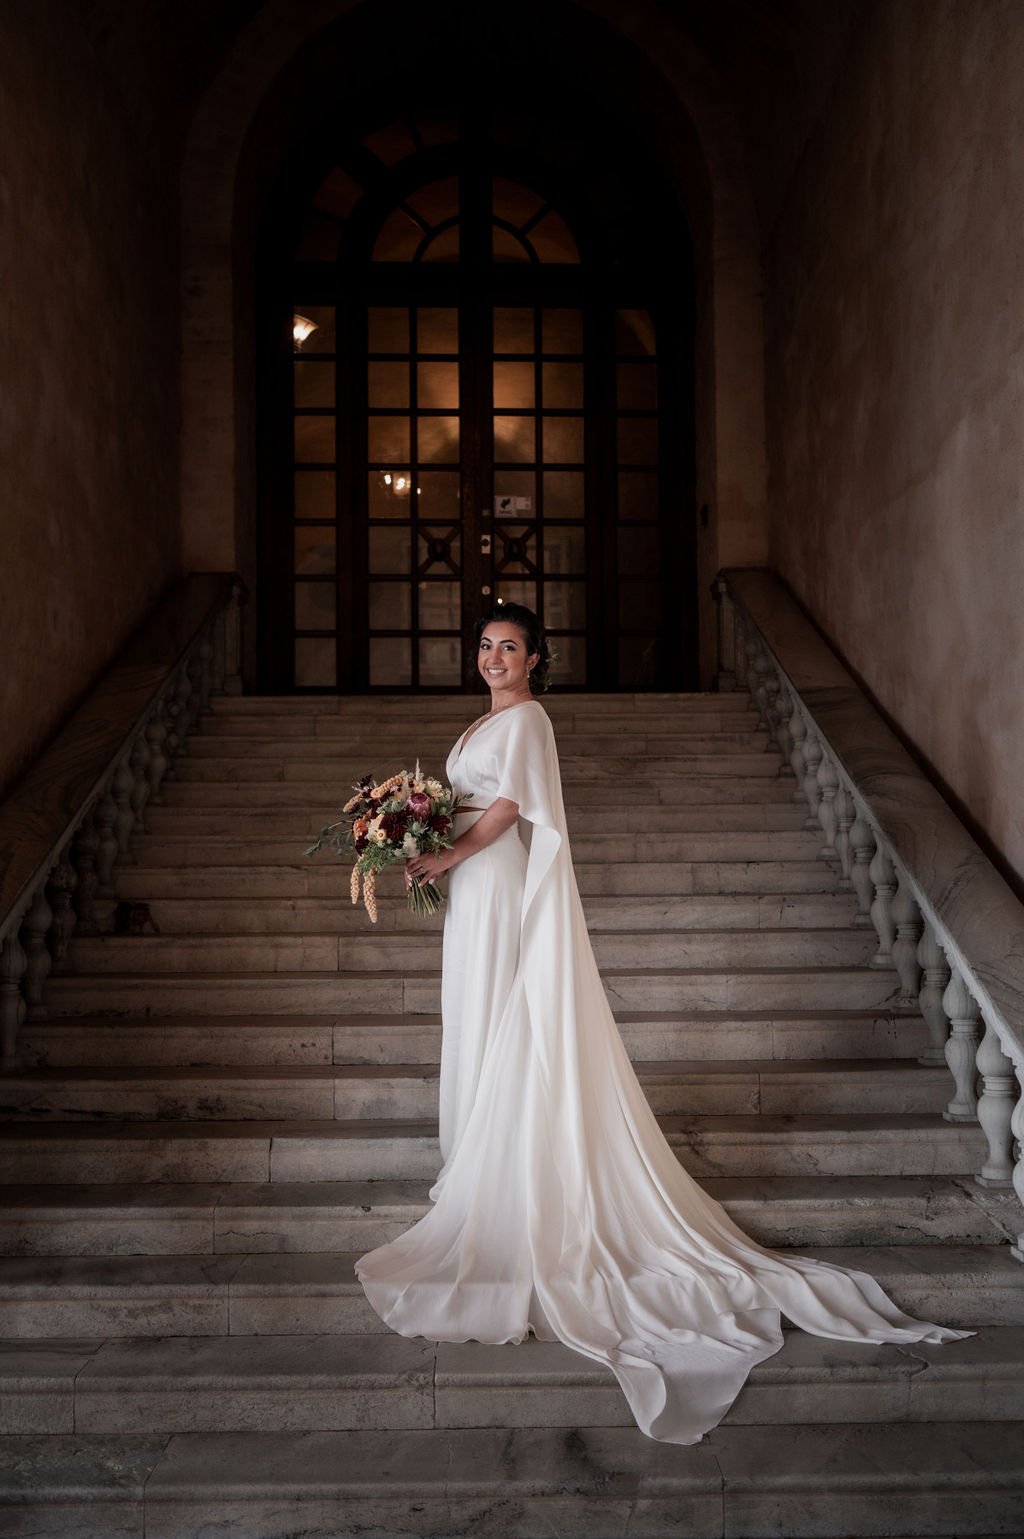  nordeen real bride minimal wedding dress in sweden 